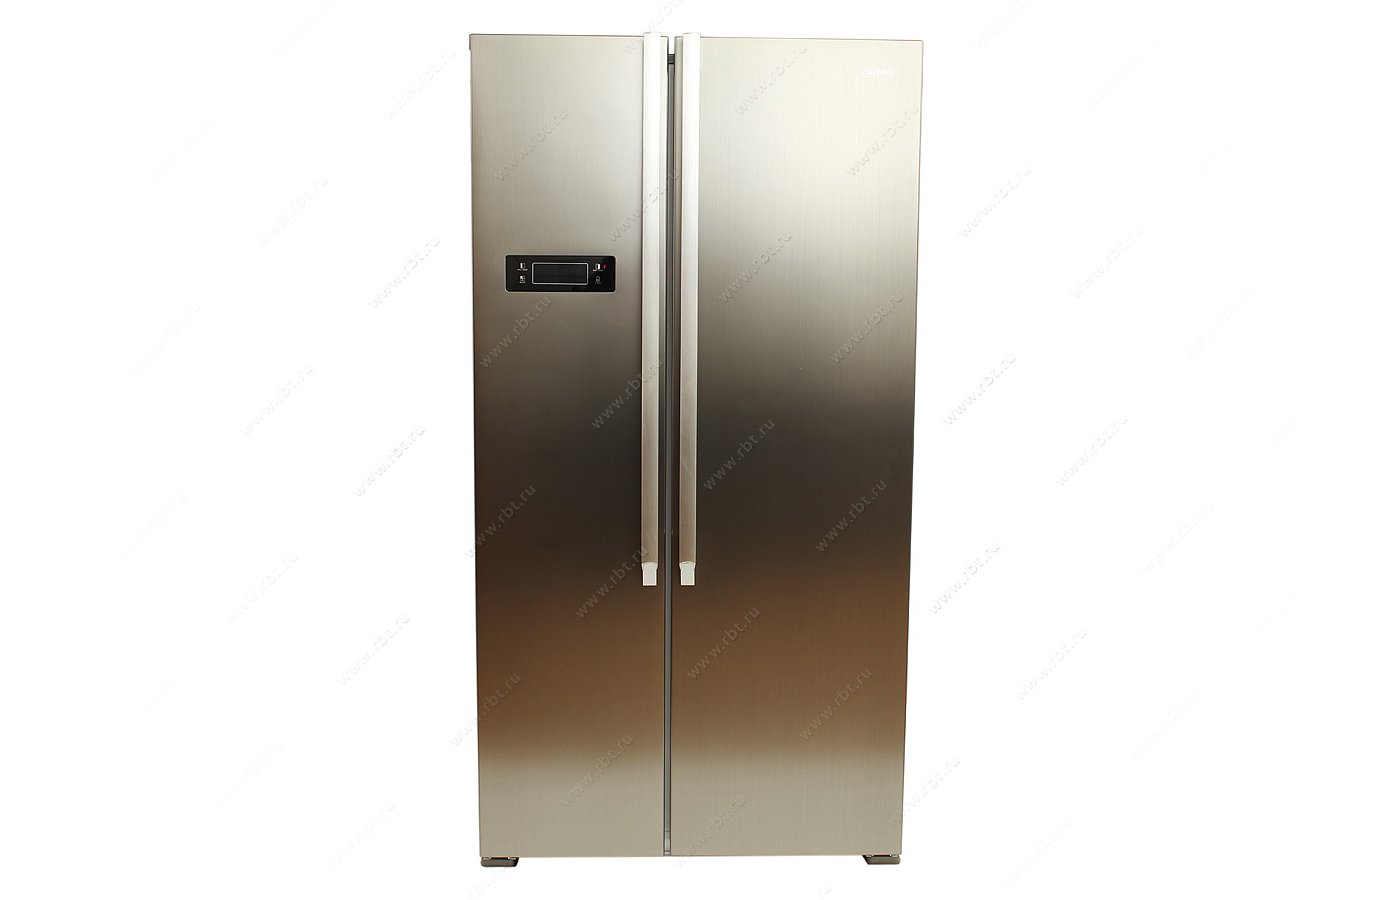 Холодильник рбт ру. Холодильник FK-87 двухдверный, серебристый. Стеклянный холодильник РБТ. Холодильник Leran RBT.